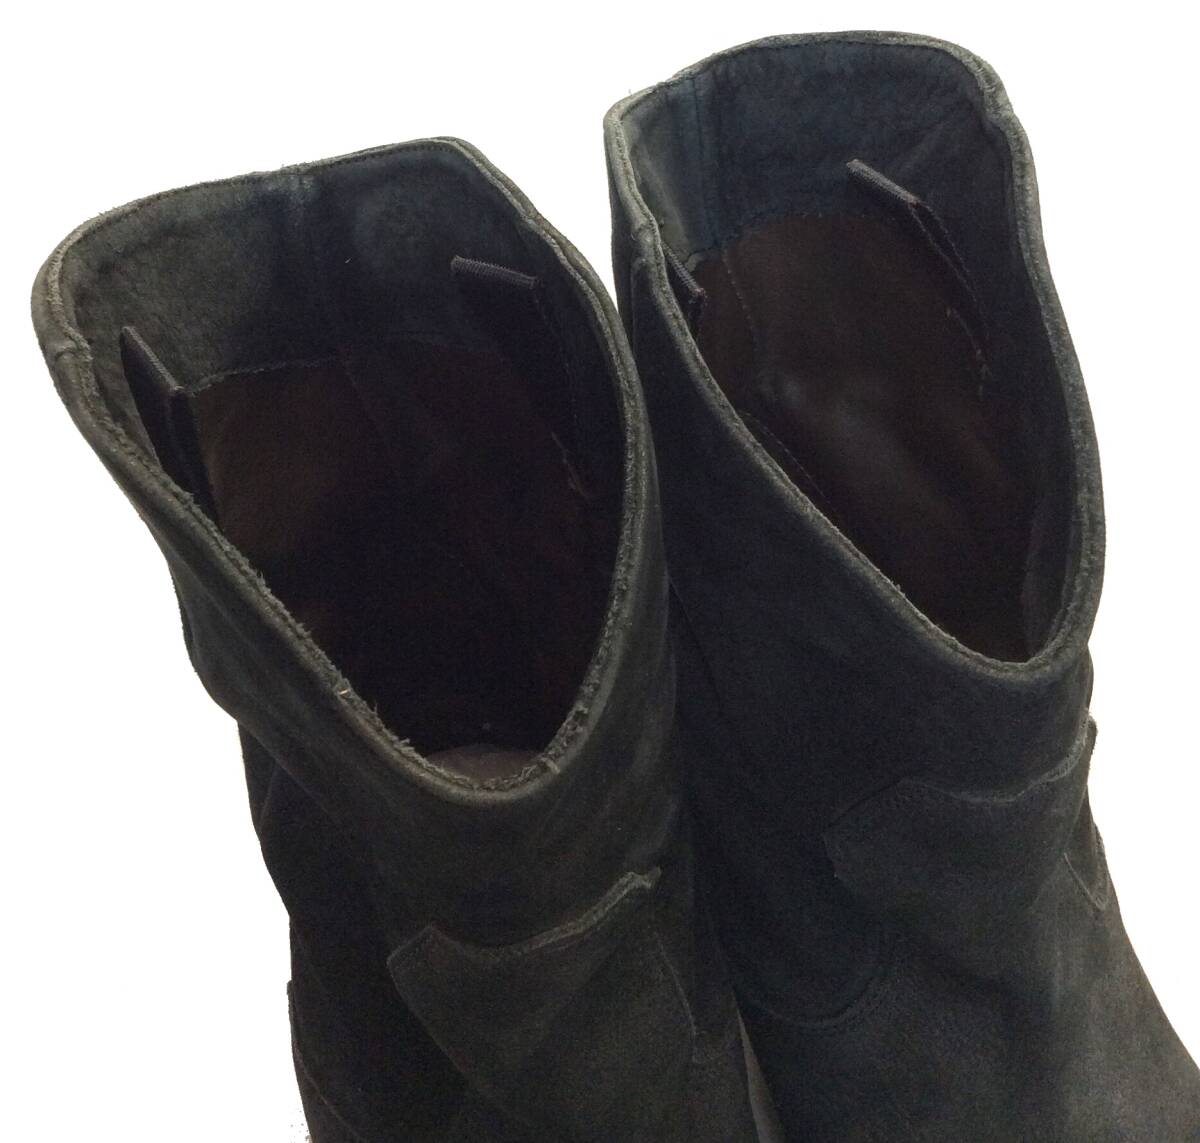 BUTTERO ブッテロ ヌバック レザーブーツ ウエスタンブーツ ショートブーツ 靴 シューズ ブラック 黒 ITALY製 38 メンズ レディース（ma) _画像4